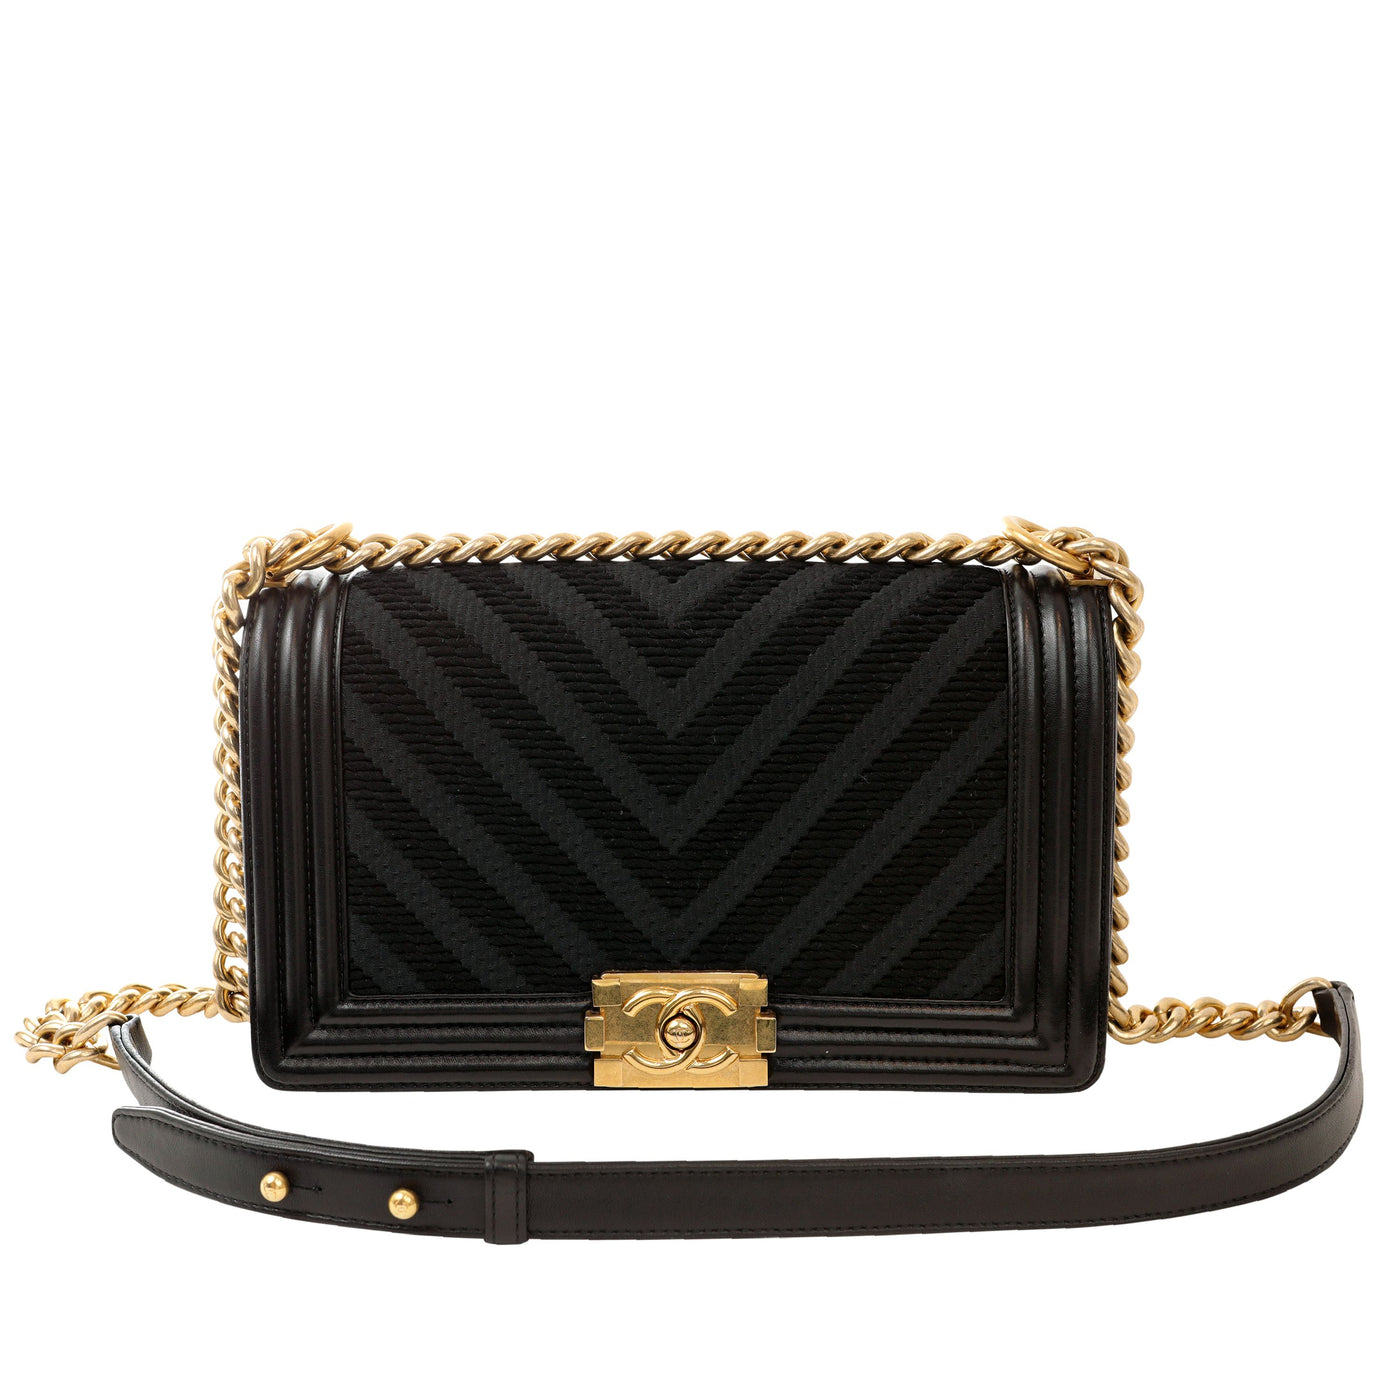 Chanel Black Braided Twill Medium Boy Bag w/ Gold Hardware